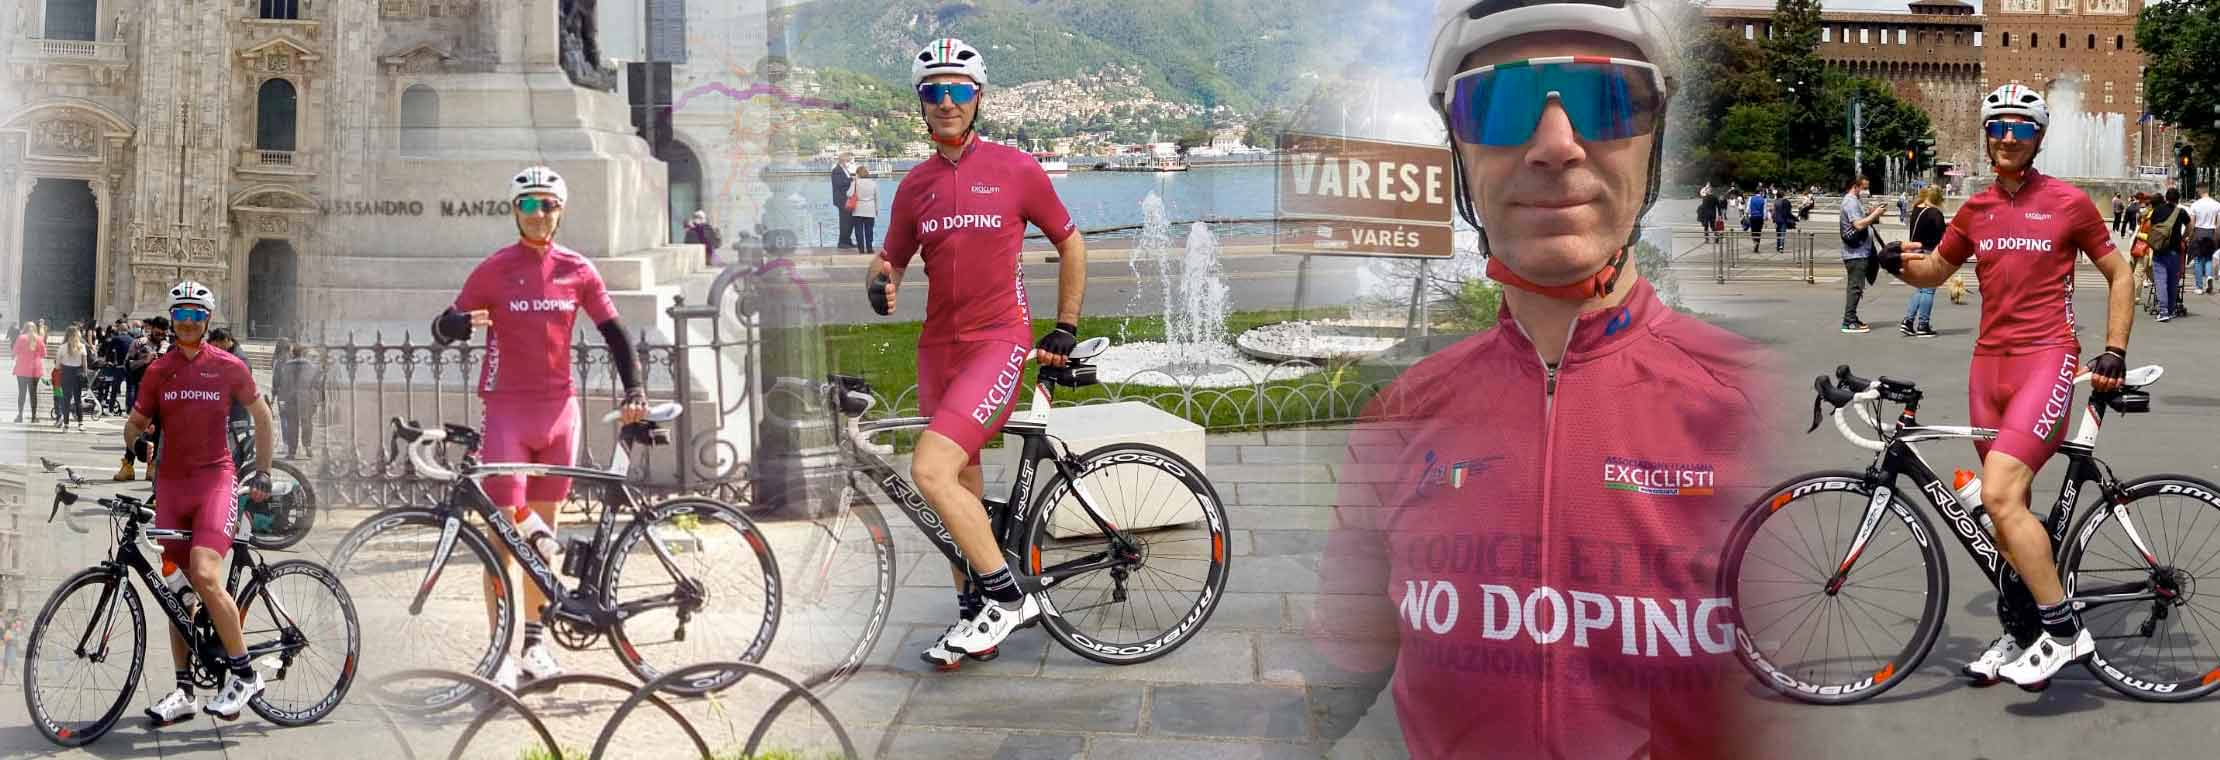 Nuova impresa ciclistica di Antonio Cortese contro il doping nel ciclismo